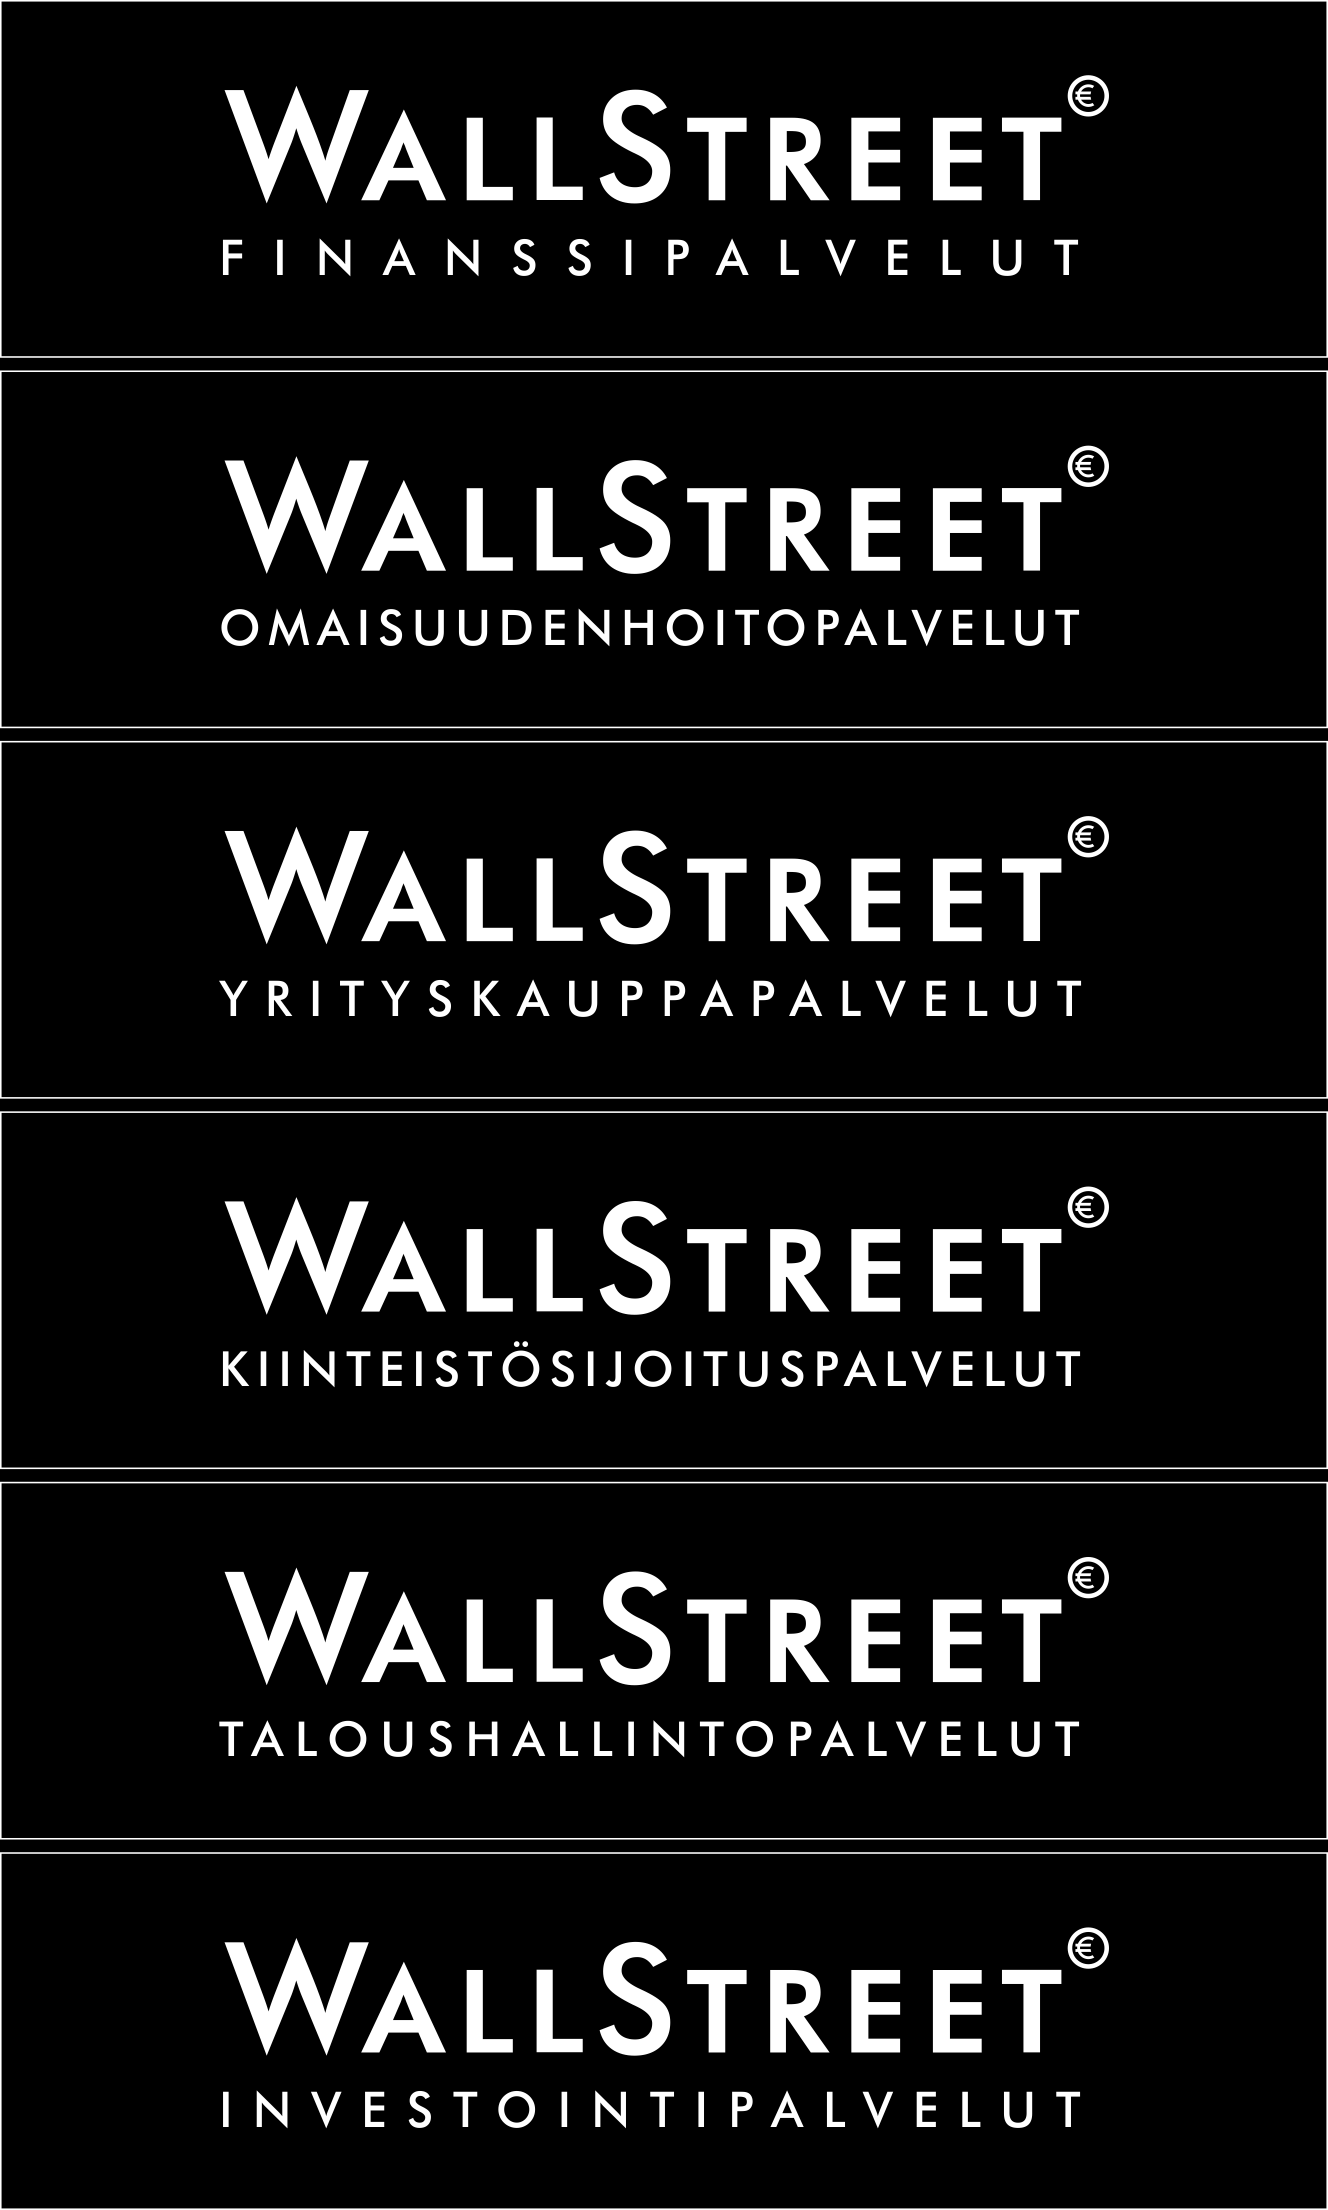 Sijoitusaika noin 5 vuotta Sijoitustuotteen tarjoaja on Wallstreet Omaisuudenhoitopalvelut (Wallstreet Asset Management Oy) ja liikkeeseenlaskija on Commerzbank AG. Merkintäaika päättyy 21.5.2015.